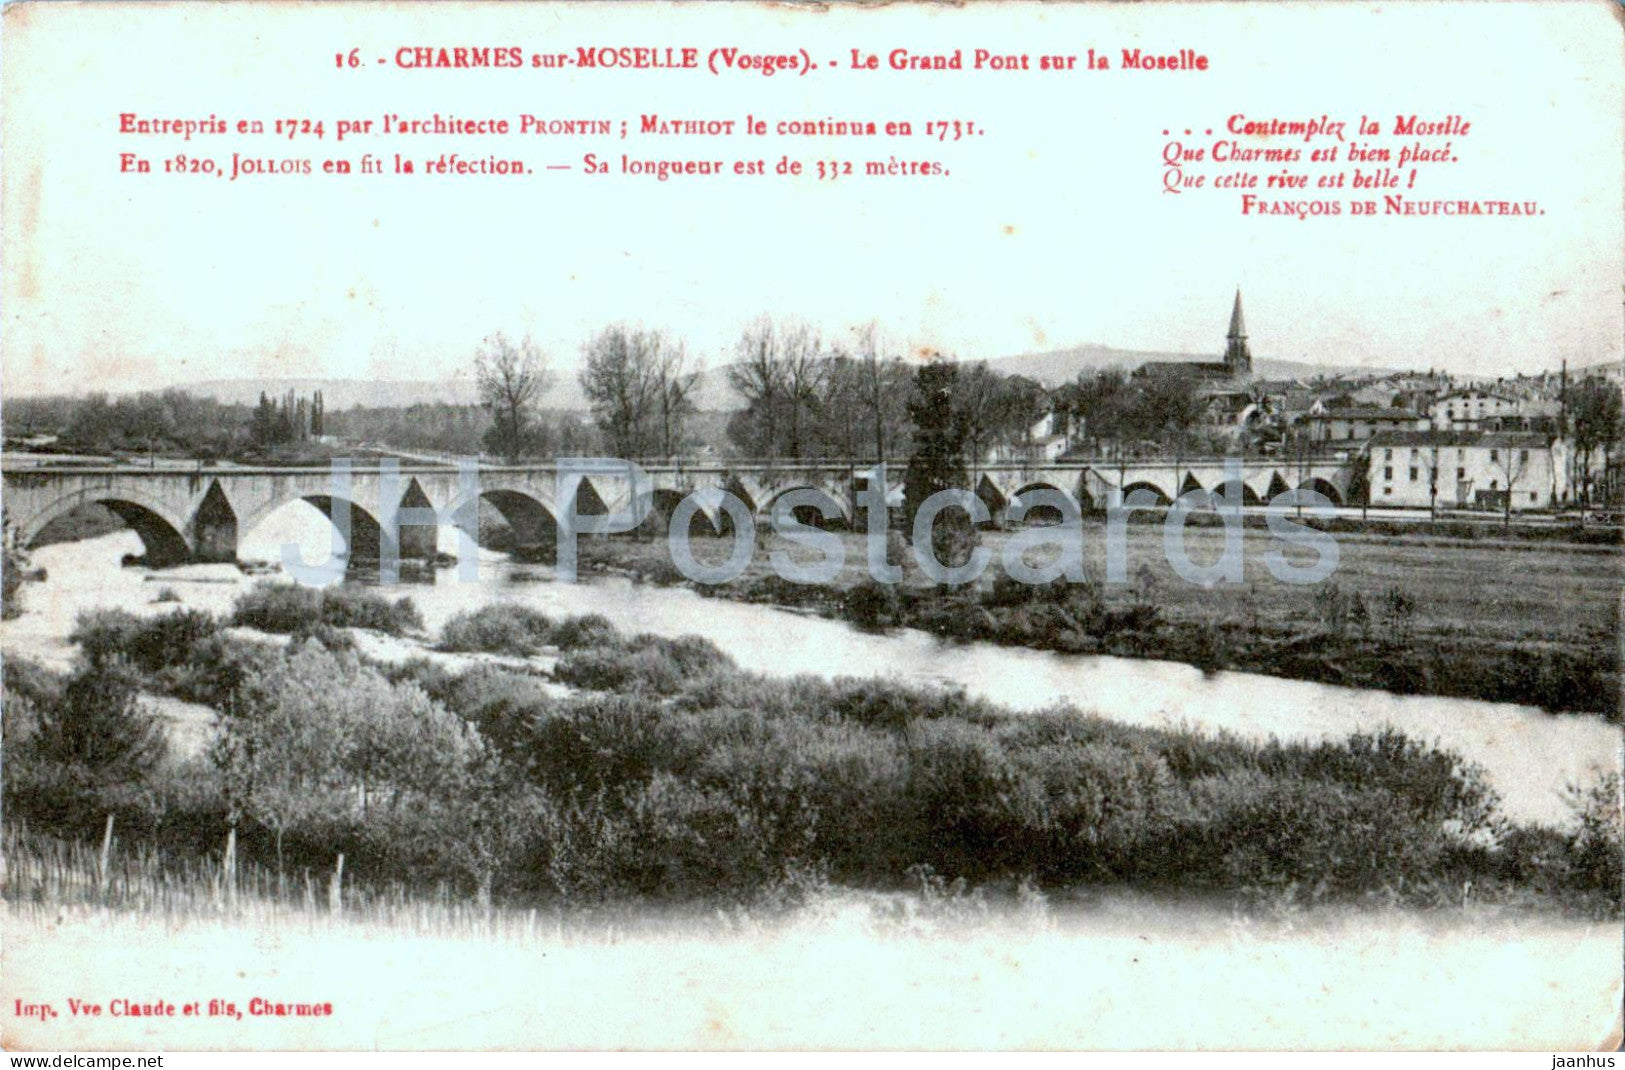 Charmes sur Moselle - Le Grand Pont sur la Moselle - bridge - 16 - old postcard - 1915 - France - used - JH Postcards